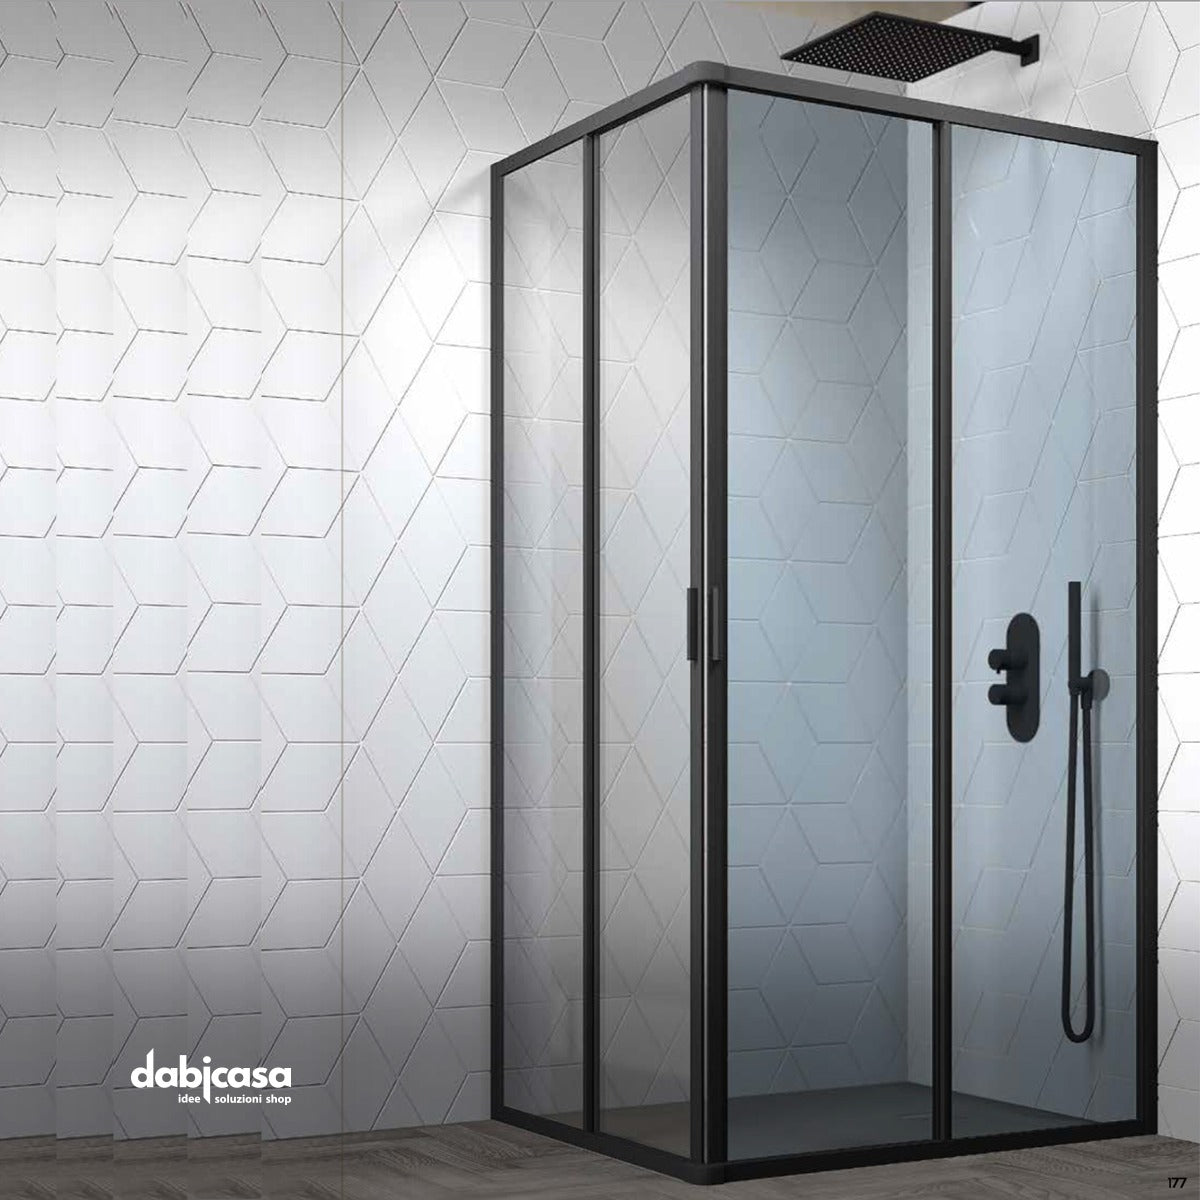 Box doccia "New Smeralda" angolare 80x80 in alluminio e pannello in vetro con profili nero essenza freeshipping - Dabicasa